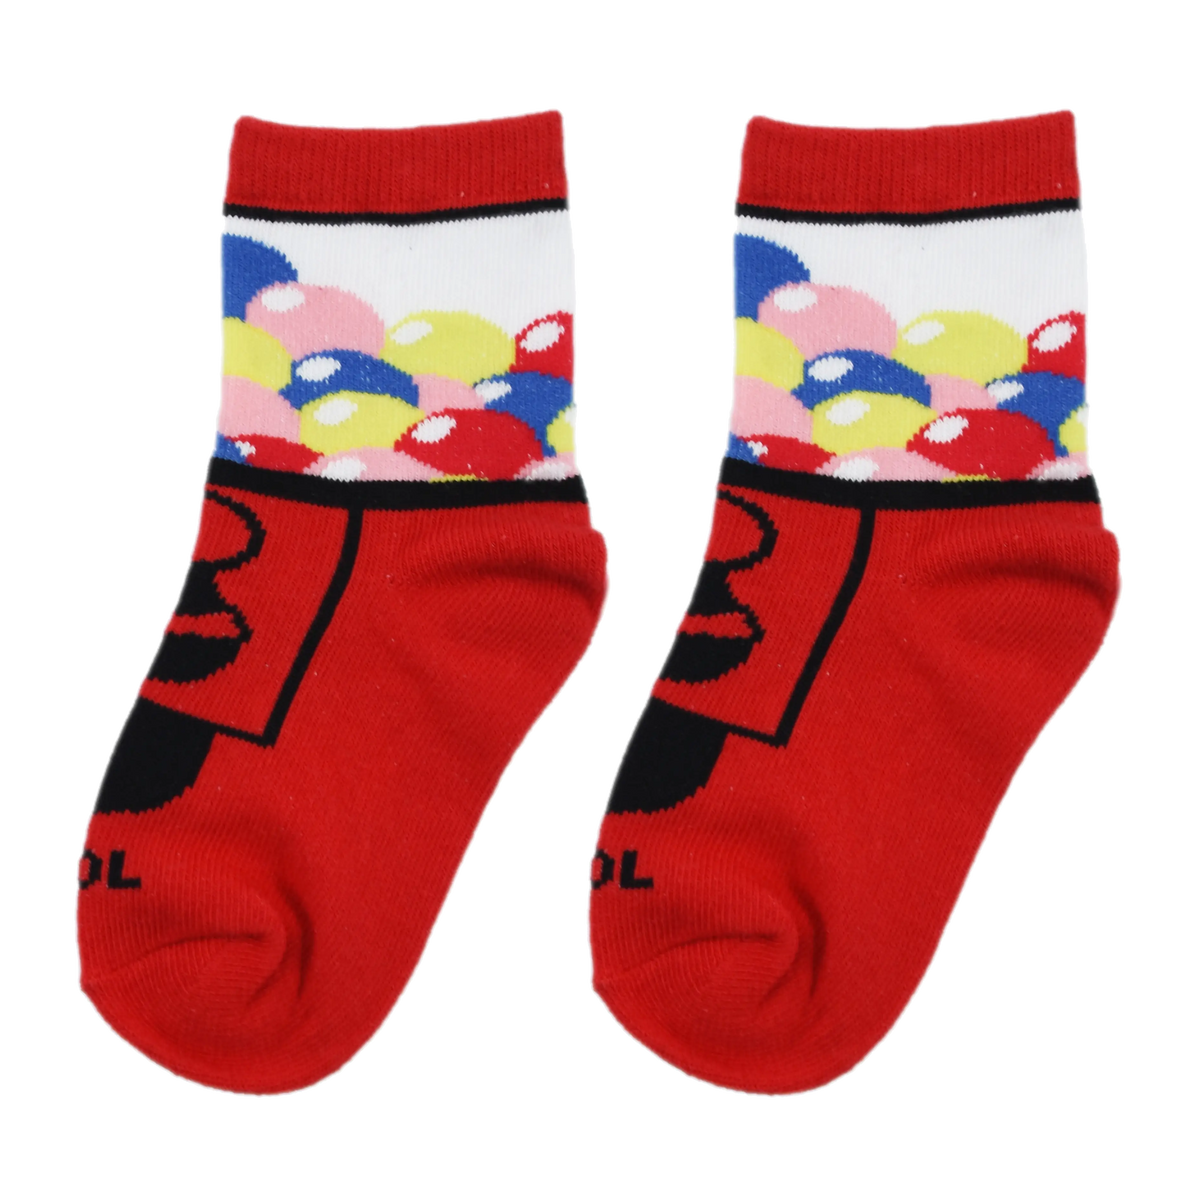 Gumball Socks - Kids - 4-7